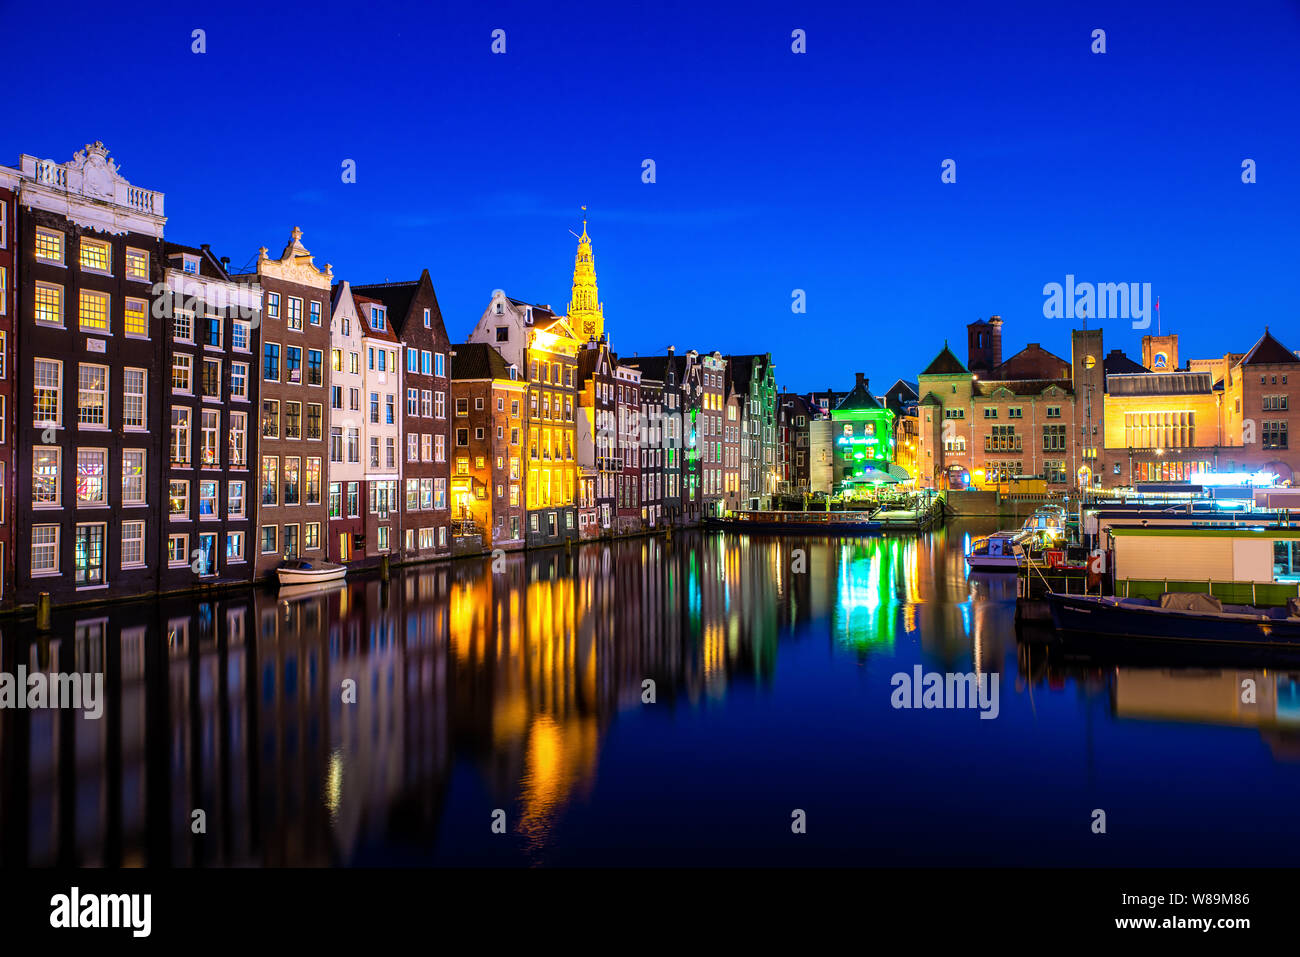 Kanäle und Tradition Haus in Amsterdam bei Nacht. Amsterdam ist die Hauptstadt und die bevölkerungsreichste Stadt der Niederlande. Stockfoto